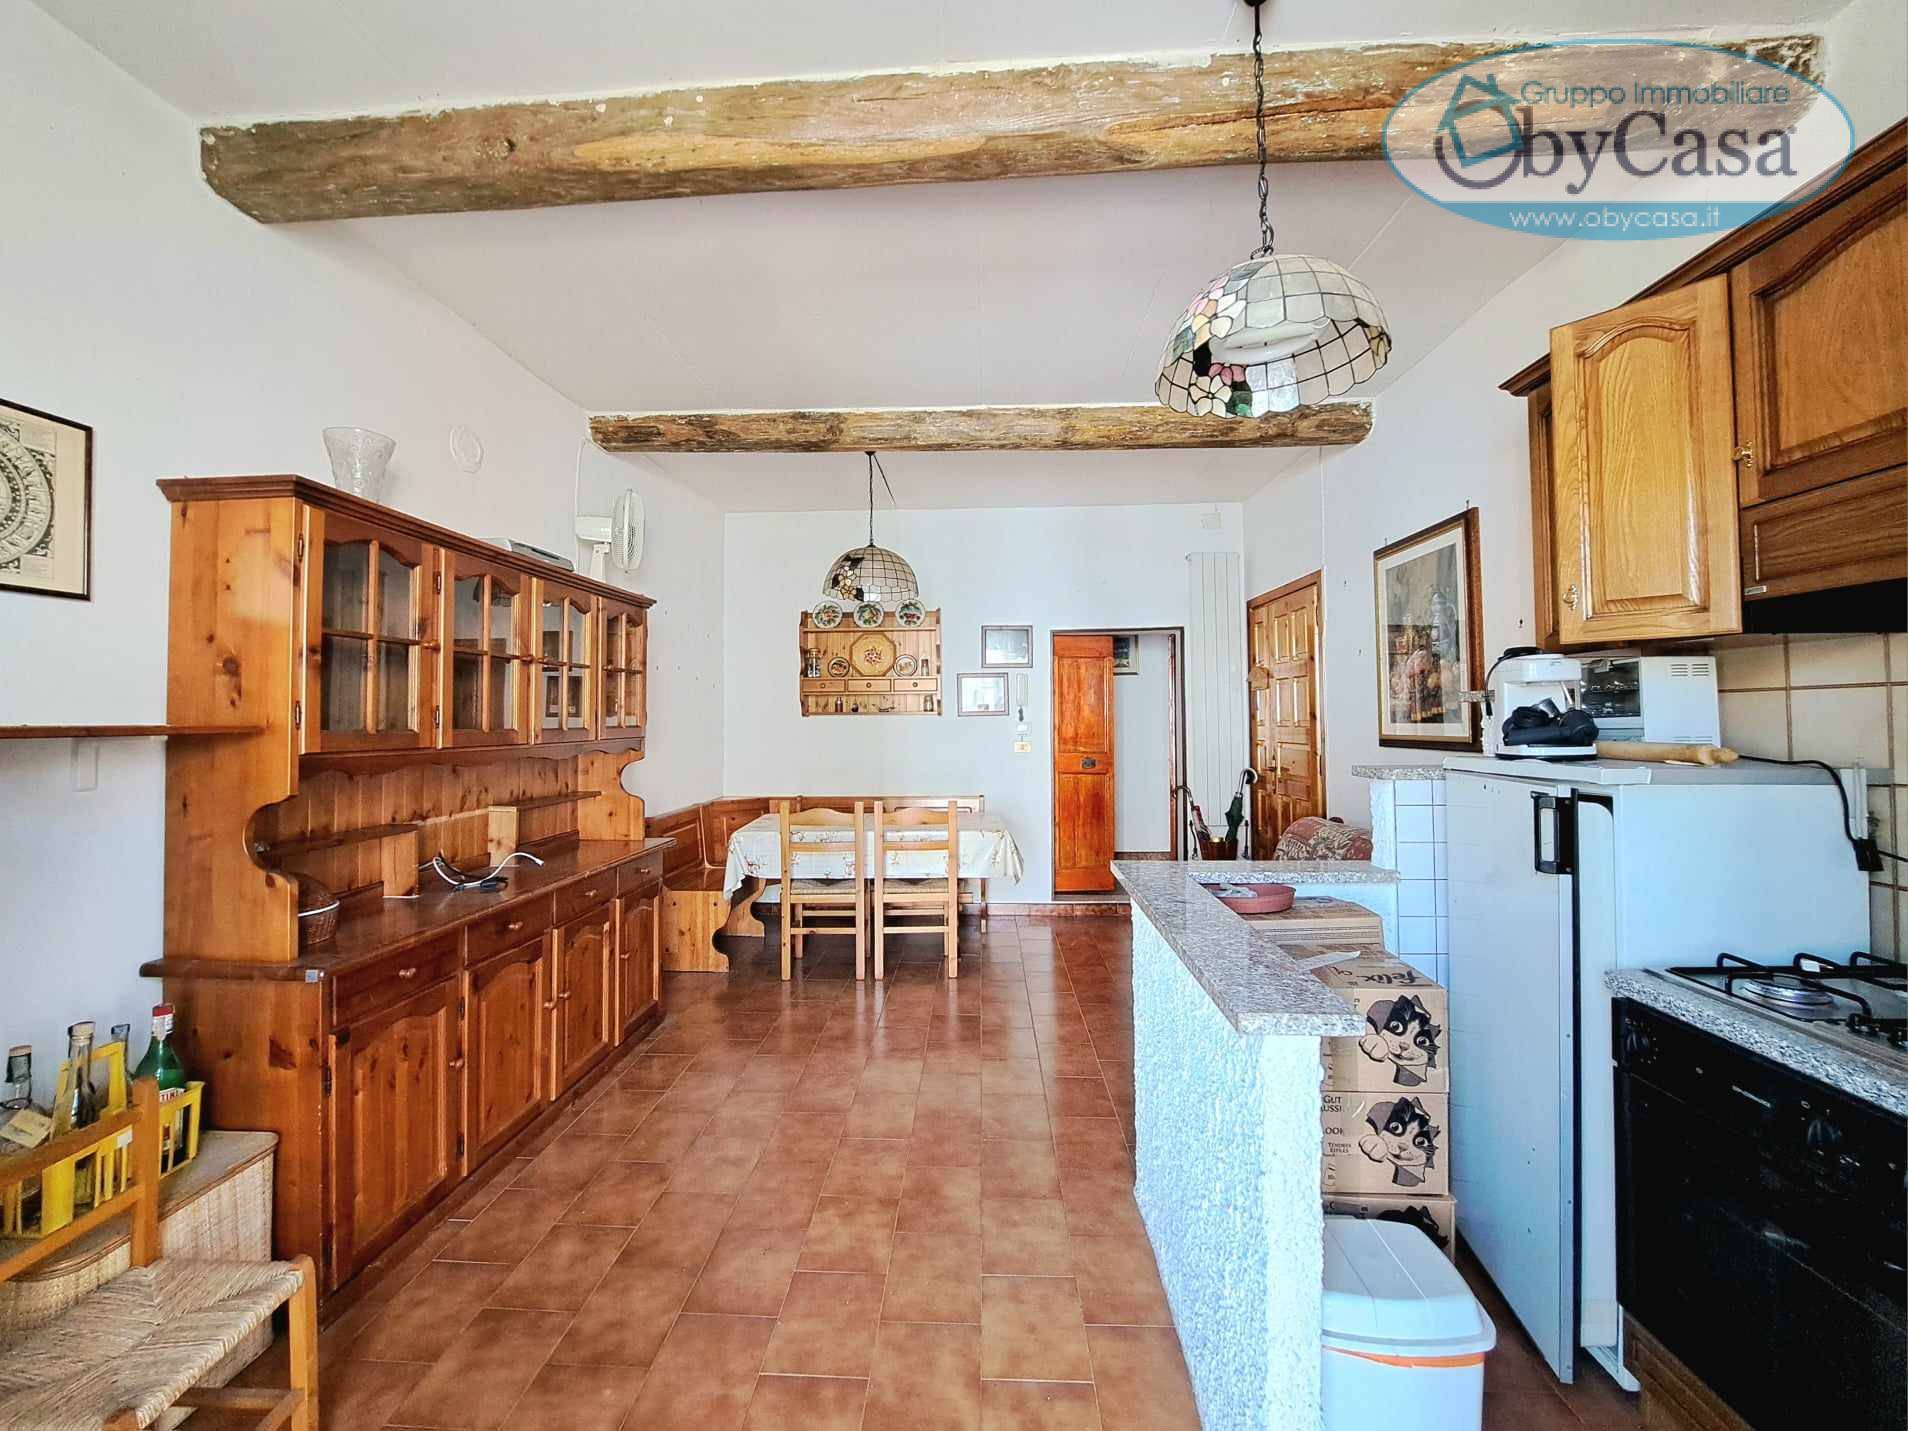 Appartamento in vendita a Vejano, 3 locali, zona Località: vejano, prezzo € 40.000 | PortaleAgenzieImmobiliari.it